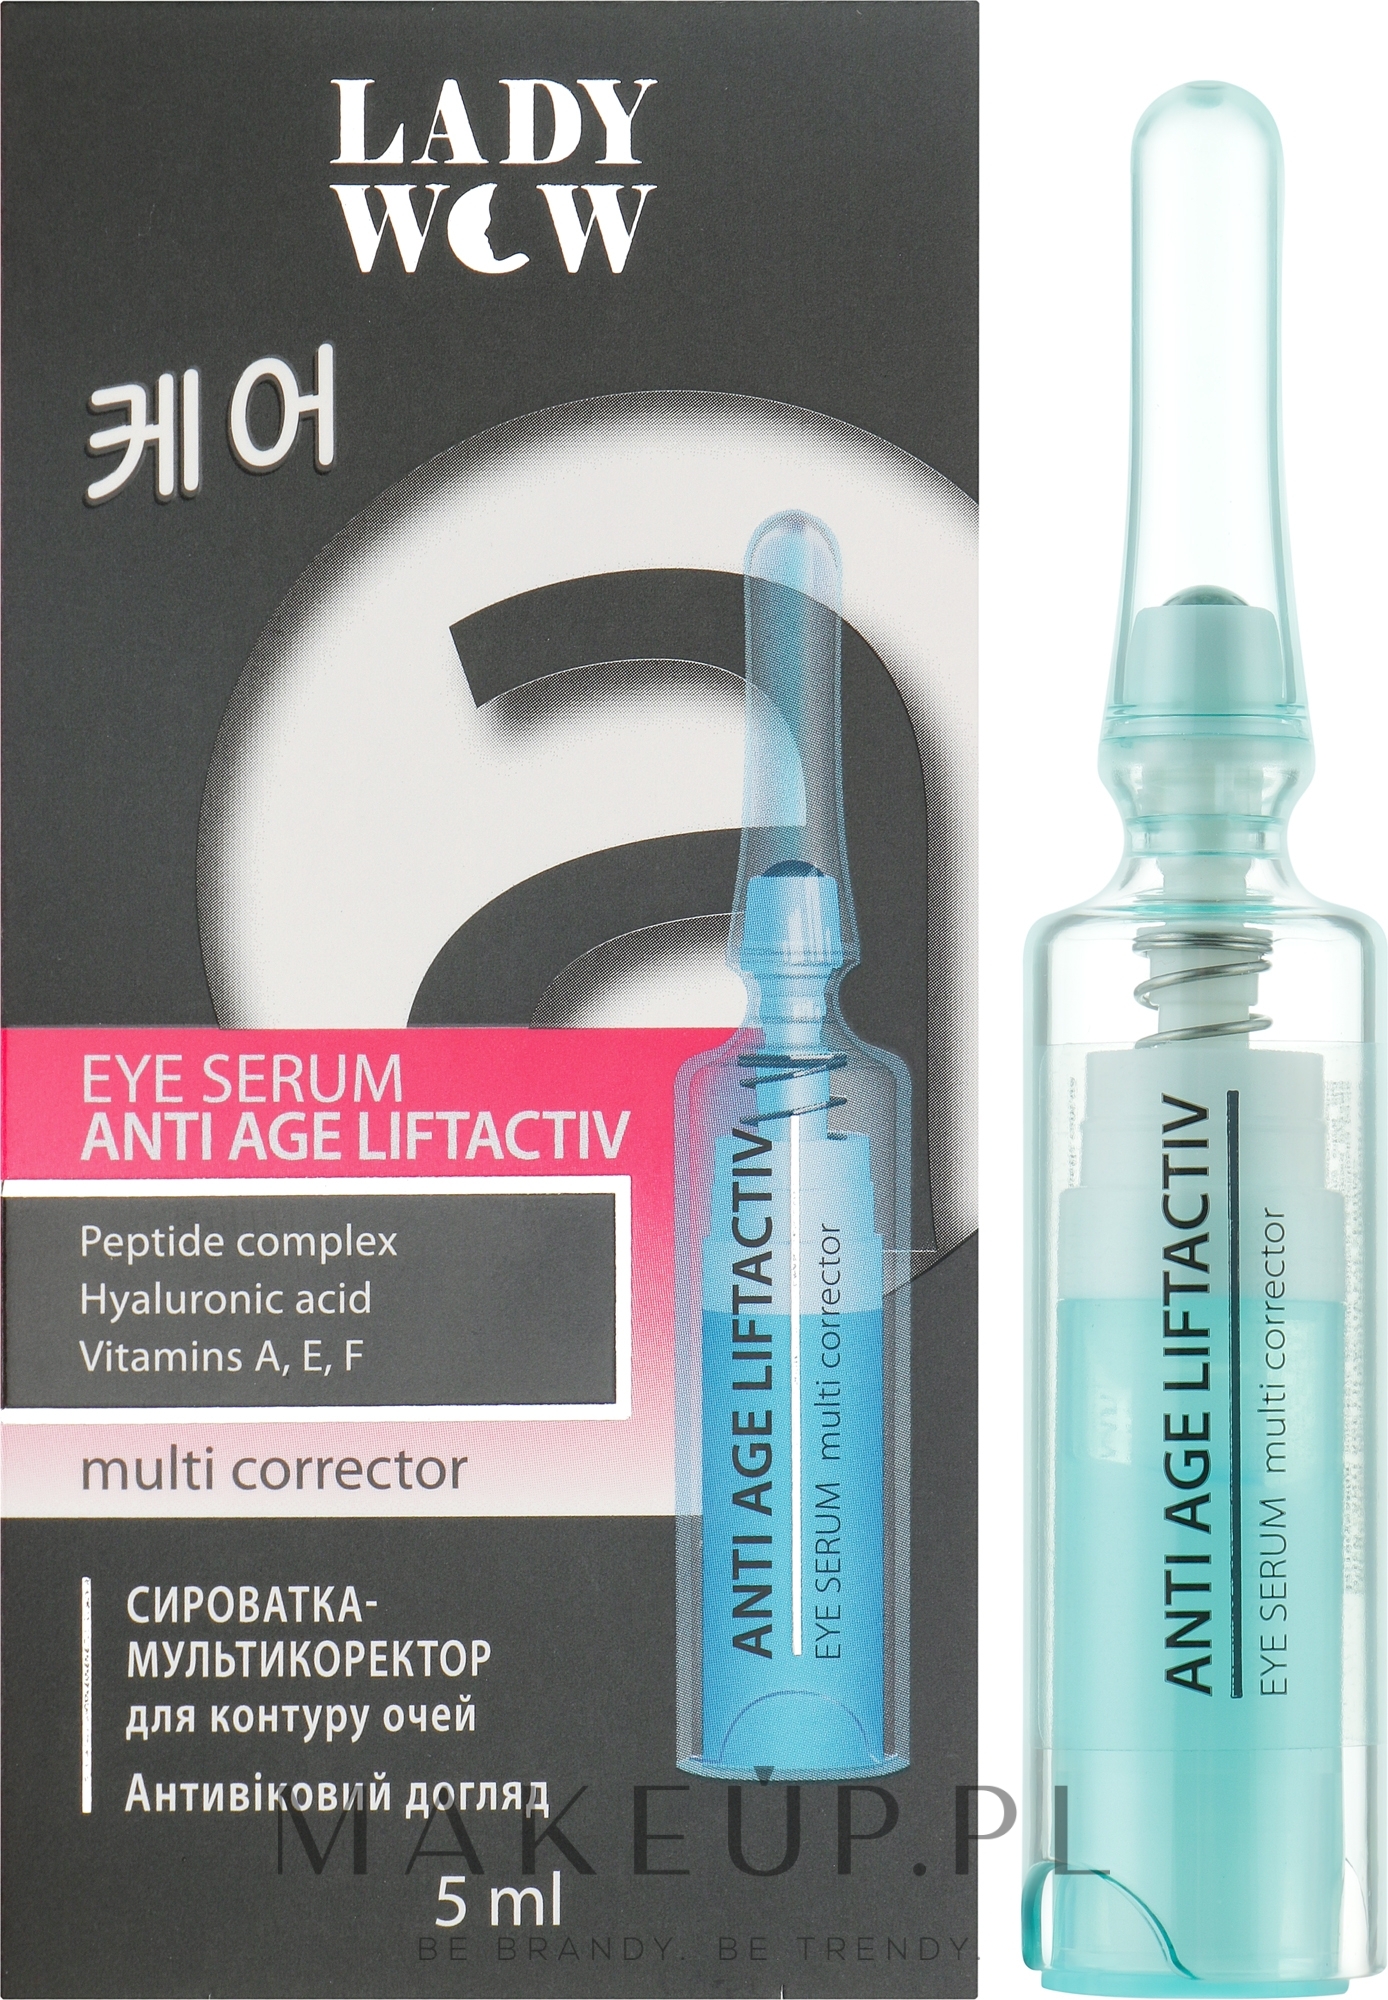 Przeciwstarzeniowe serum liftingujące pod oczy - Lady Wow Anti Age Liftactiv Eye Serum — Zdjęcie 5 ml